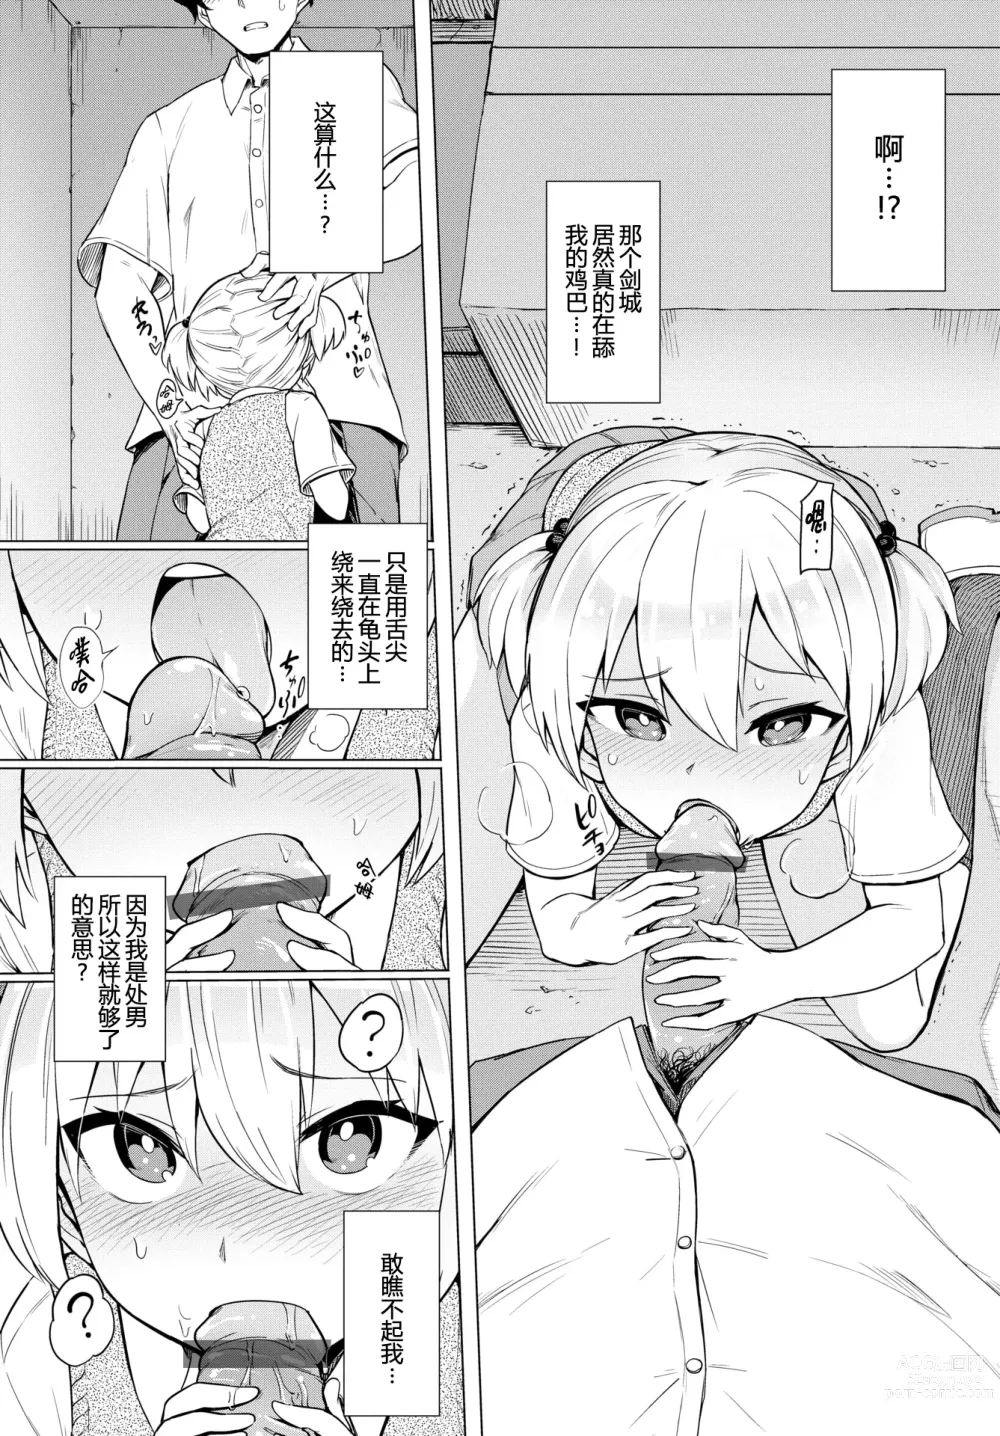 Page 6 of manga Boukun-kei Joshi